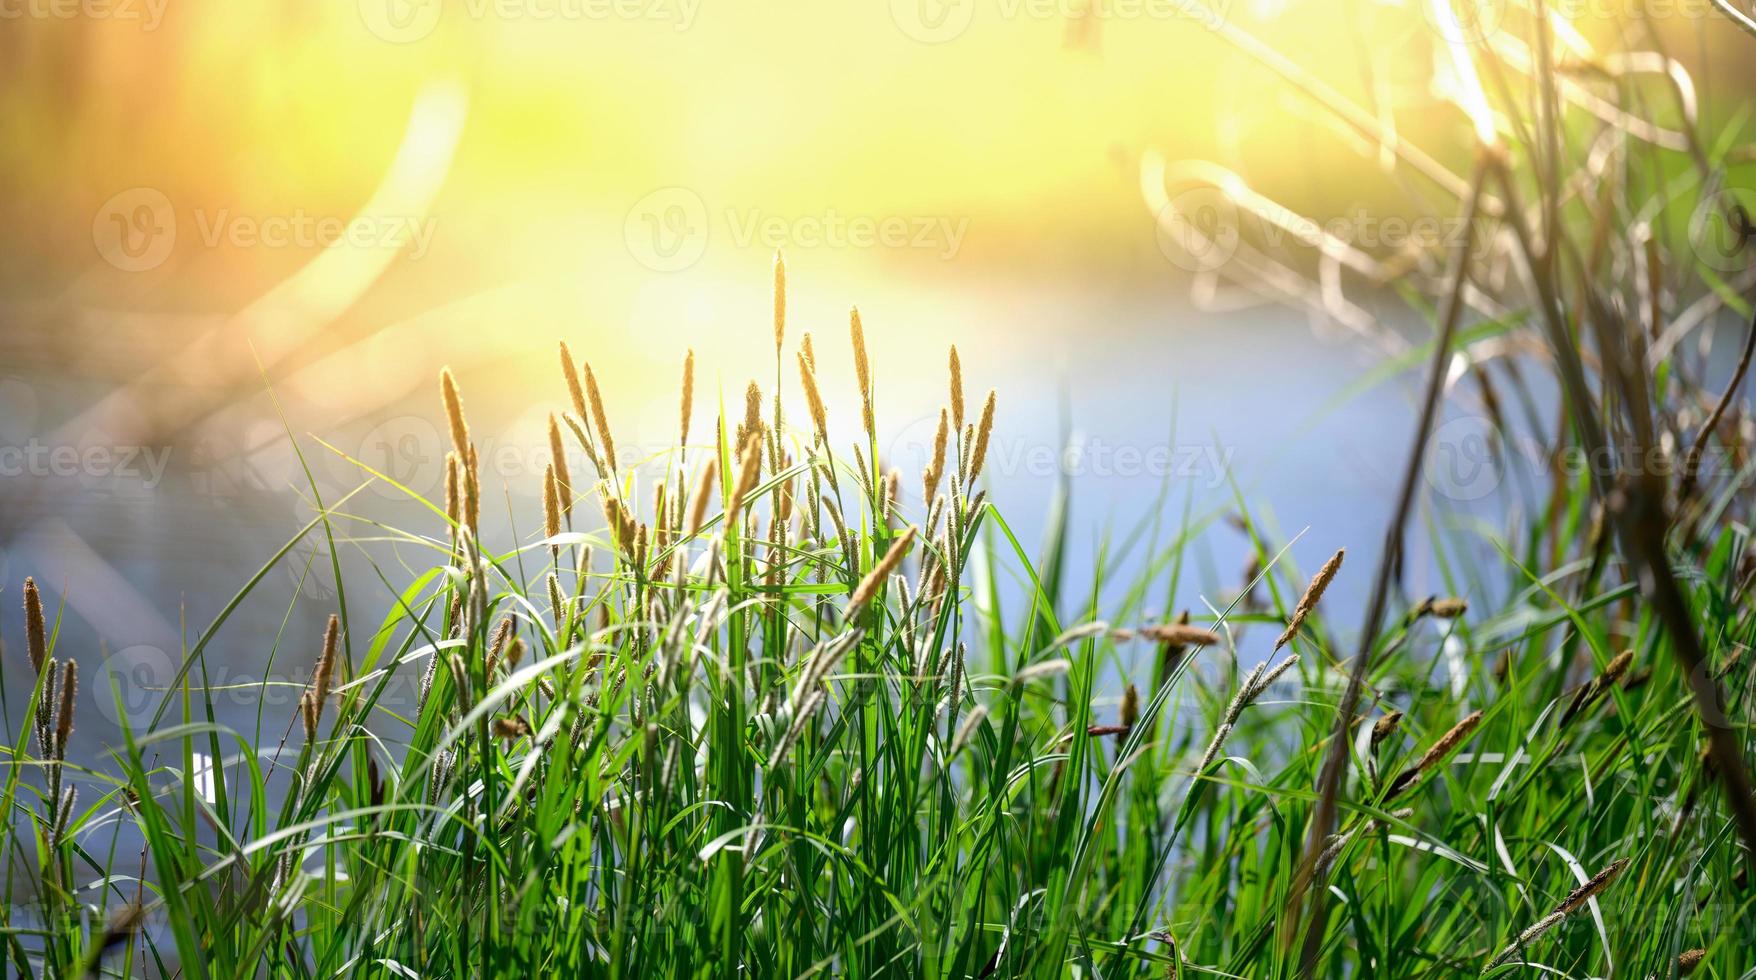 bank van de dnjepr rivier- met groeit riet en struiken Aan een voorjaar dag, de stralen van de zon zijn helder. foto